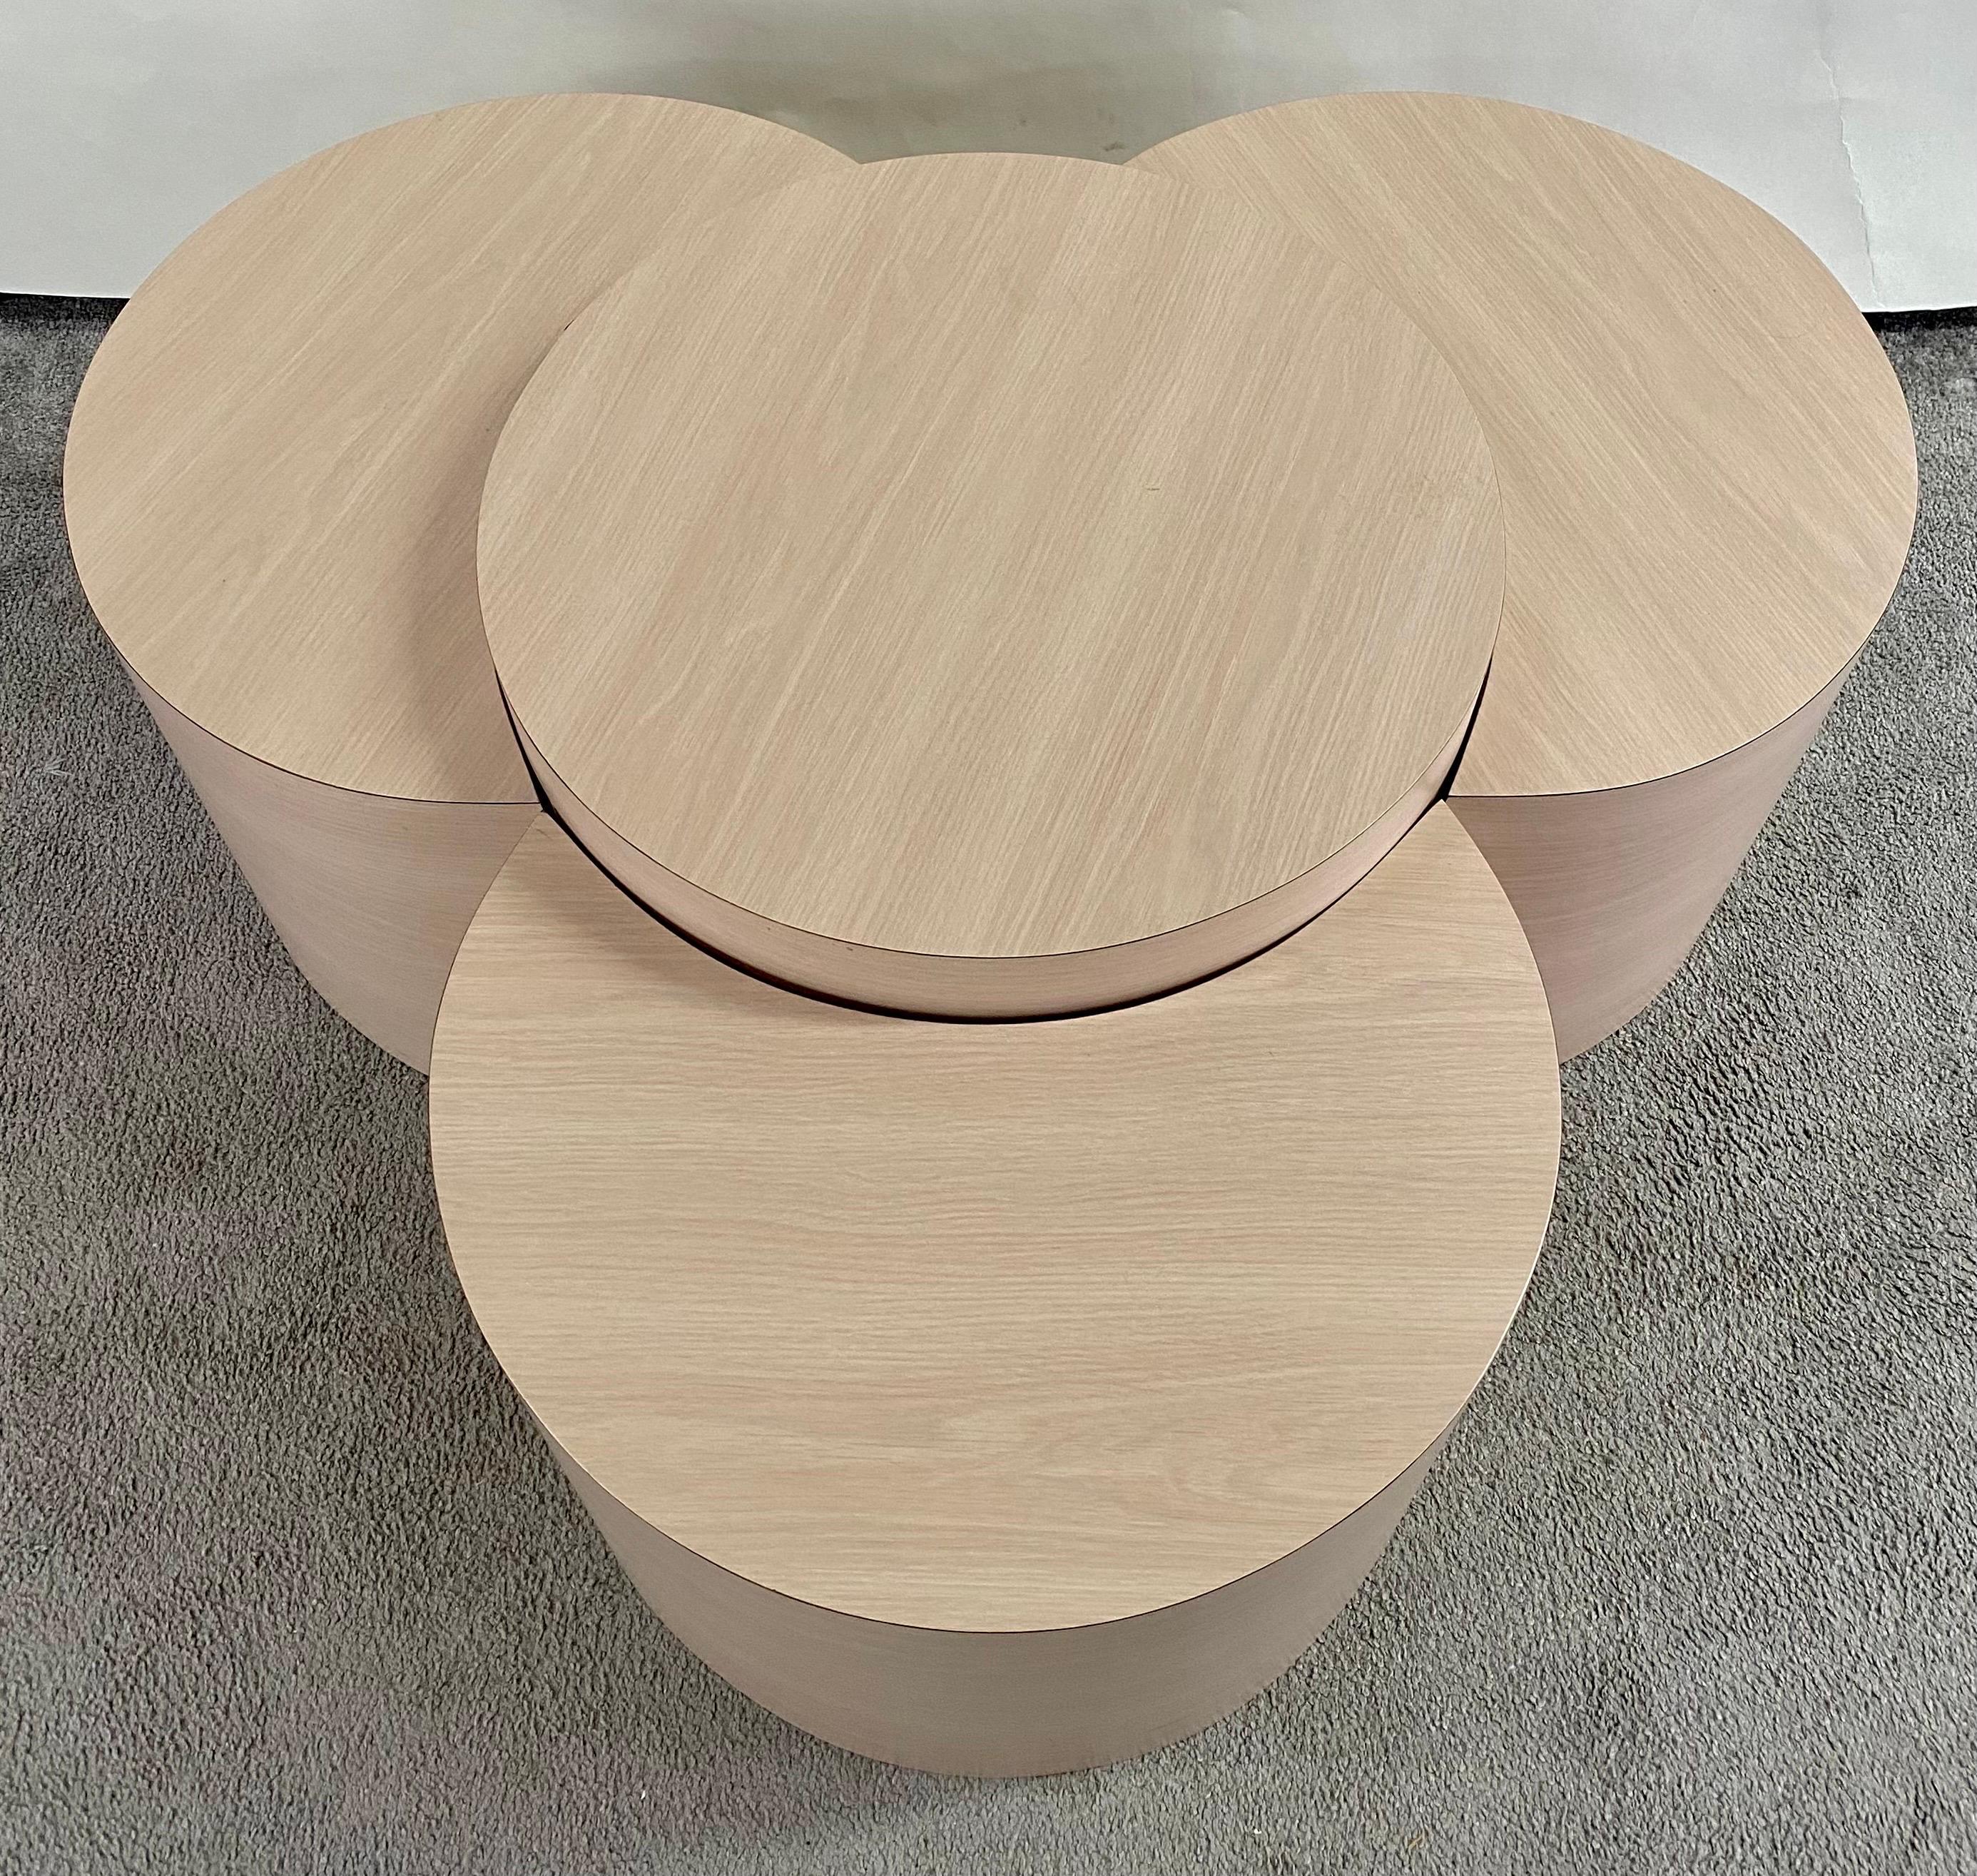 Eine wirklich vielseitige Ergänzung für Ihren Wohnbereich: ein postmodernes vierteiliges Formica-Laminat-Trommeltischset, das elegant in einem beruhigenden hellrosa Farbton gehalten ist. Diese Tische bieten nicht nur einen reizvollen Hauch von